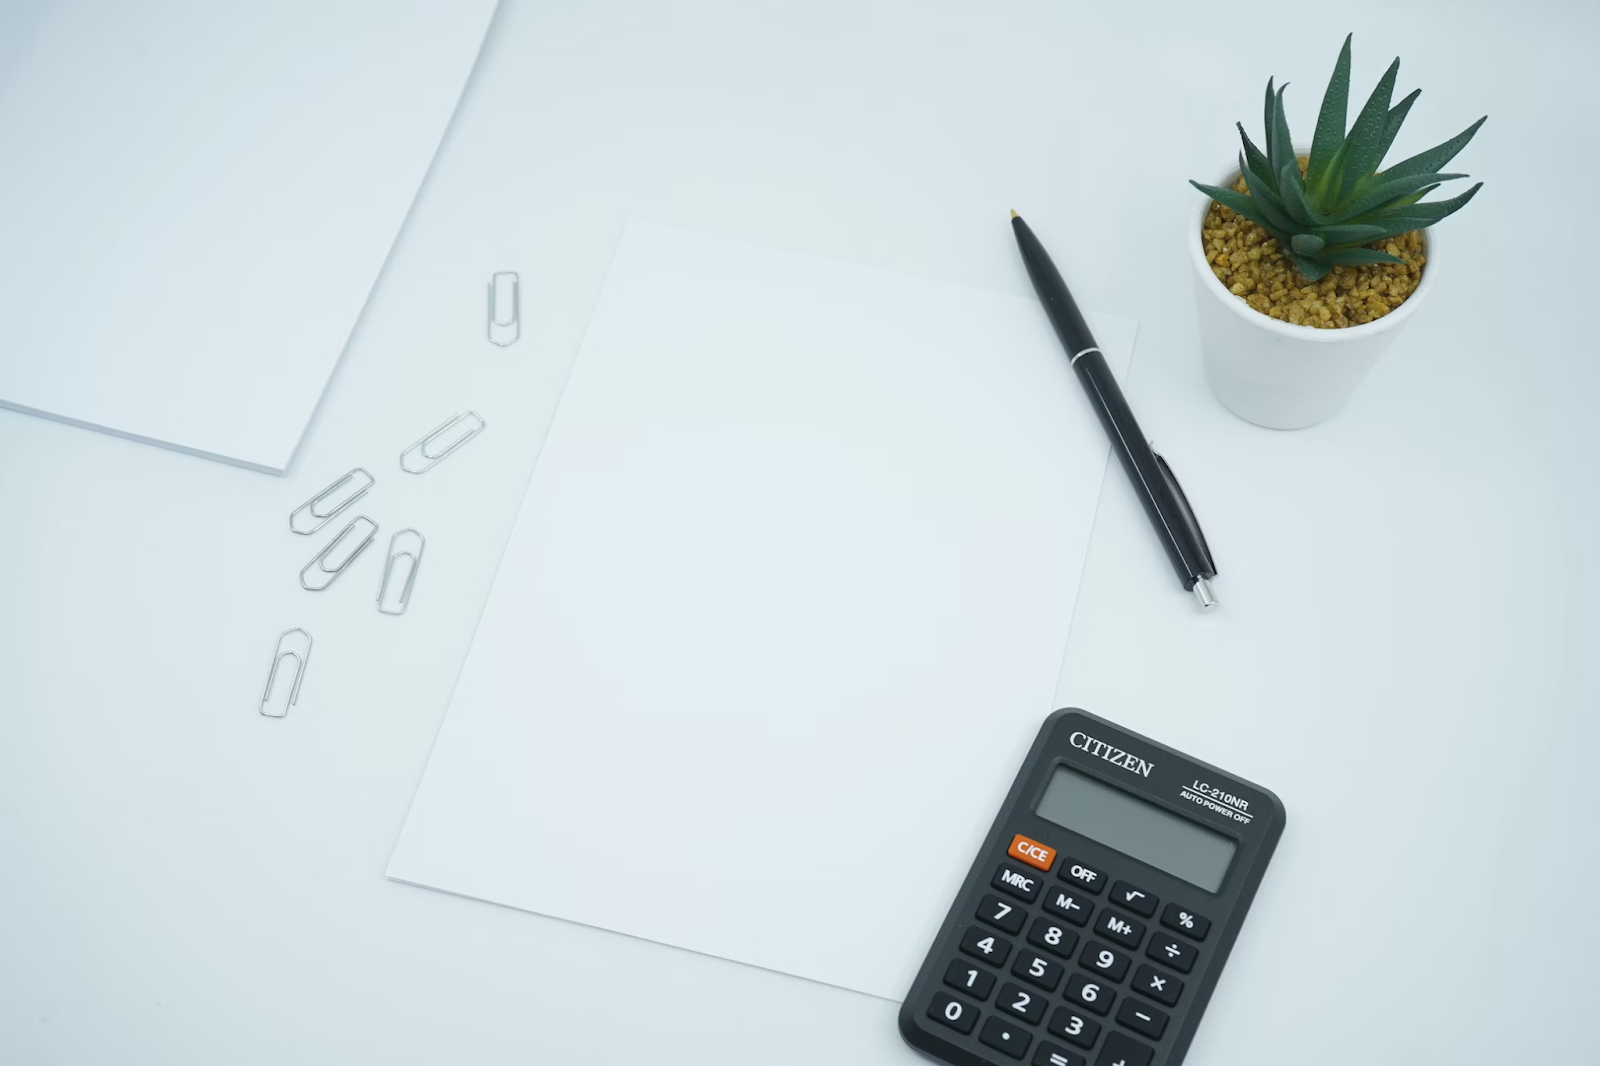 calculator pen and paper on white desk